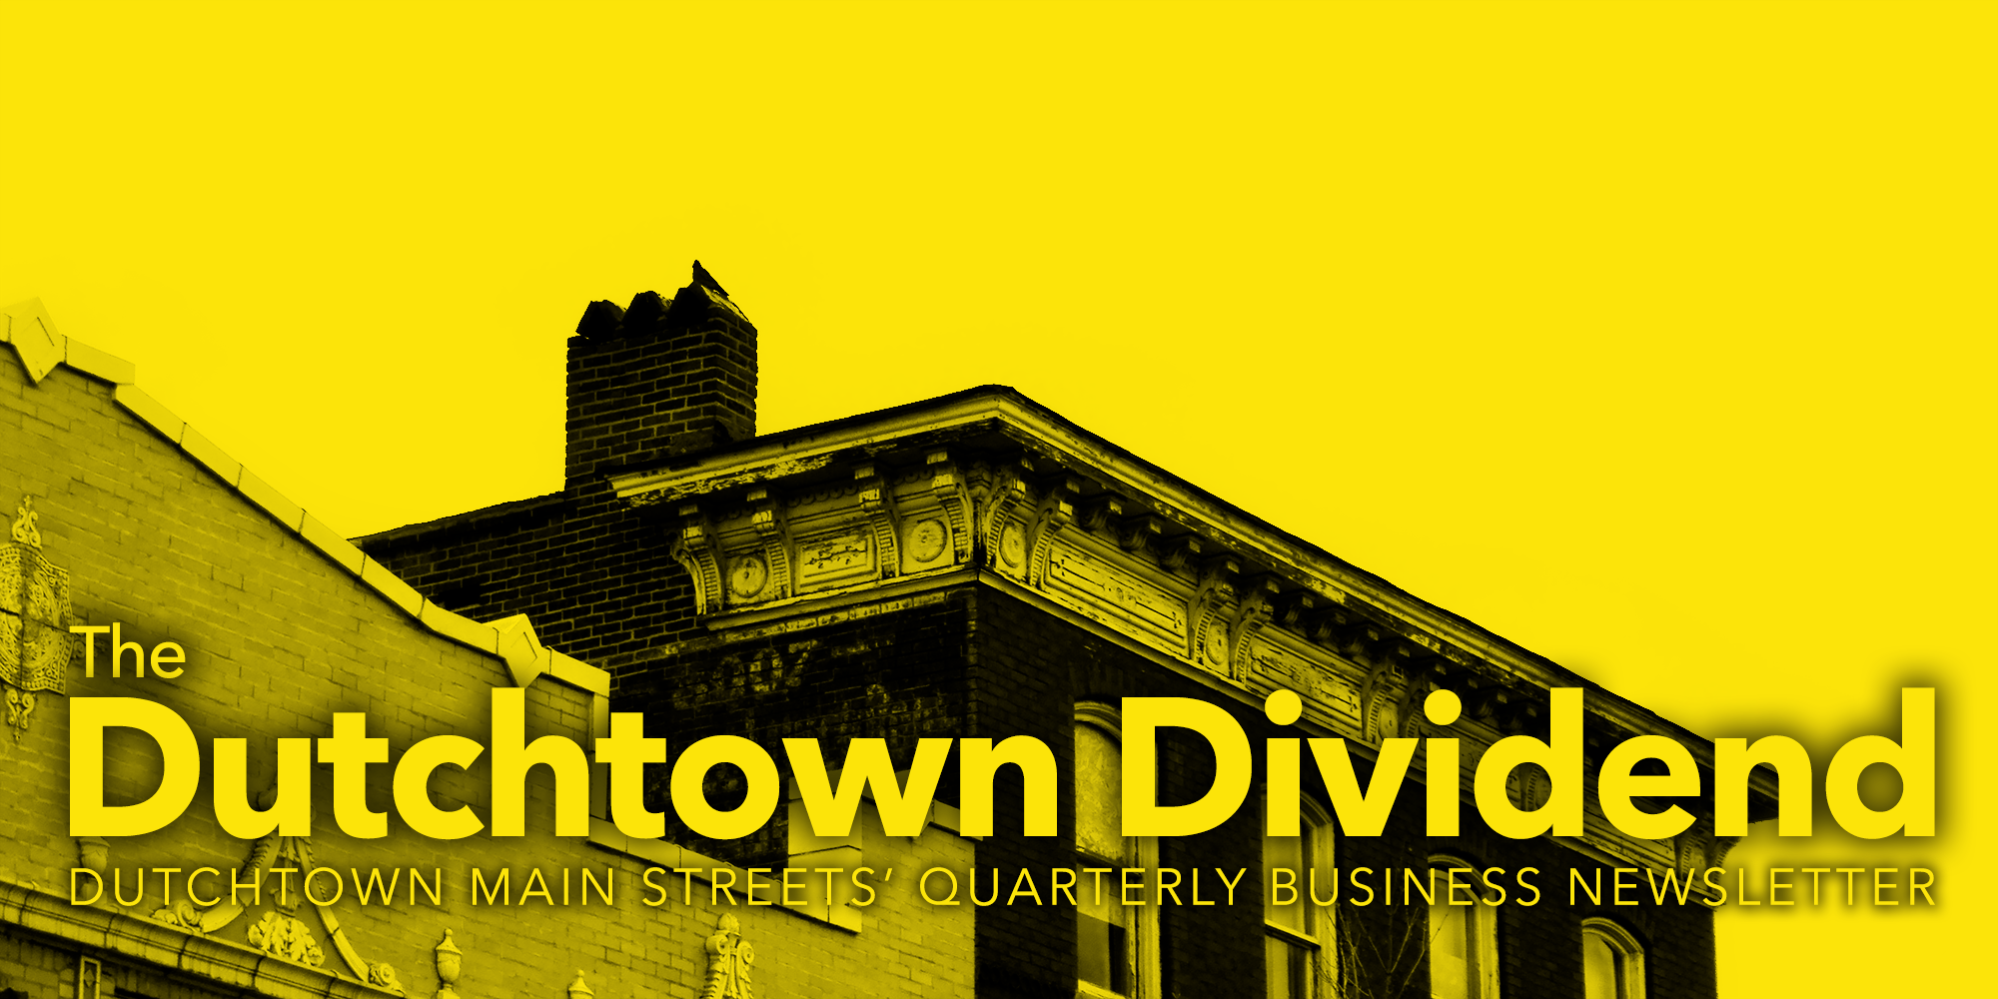 Dutchtown Dividend၊ Dutchtown Main Streets ၏ သုံးလတစ်ကြိမ် စီးပွားရေးသတင်းလွှာ။